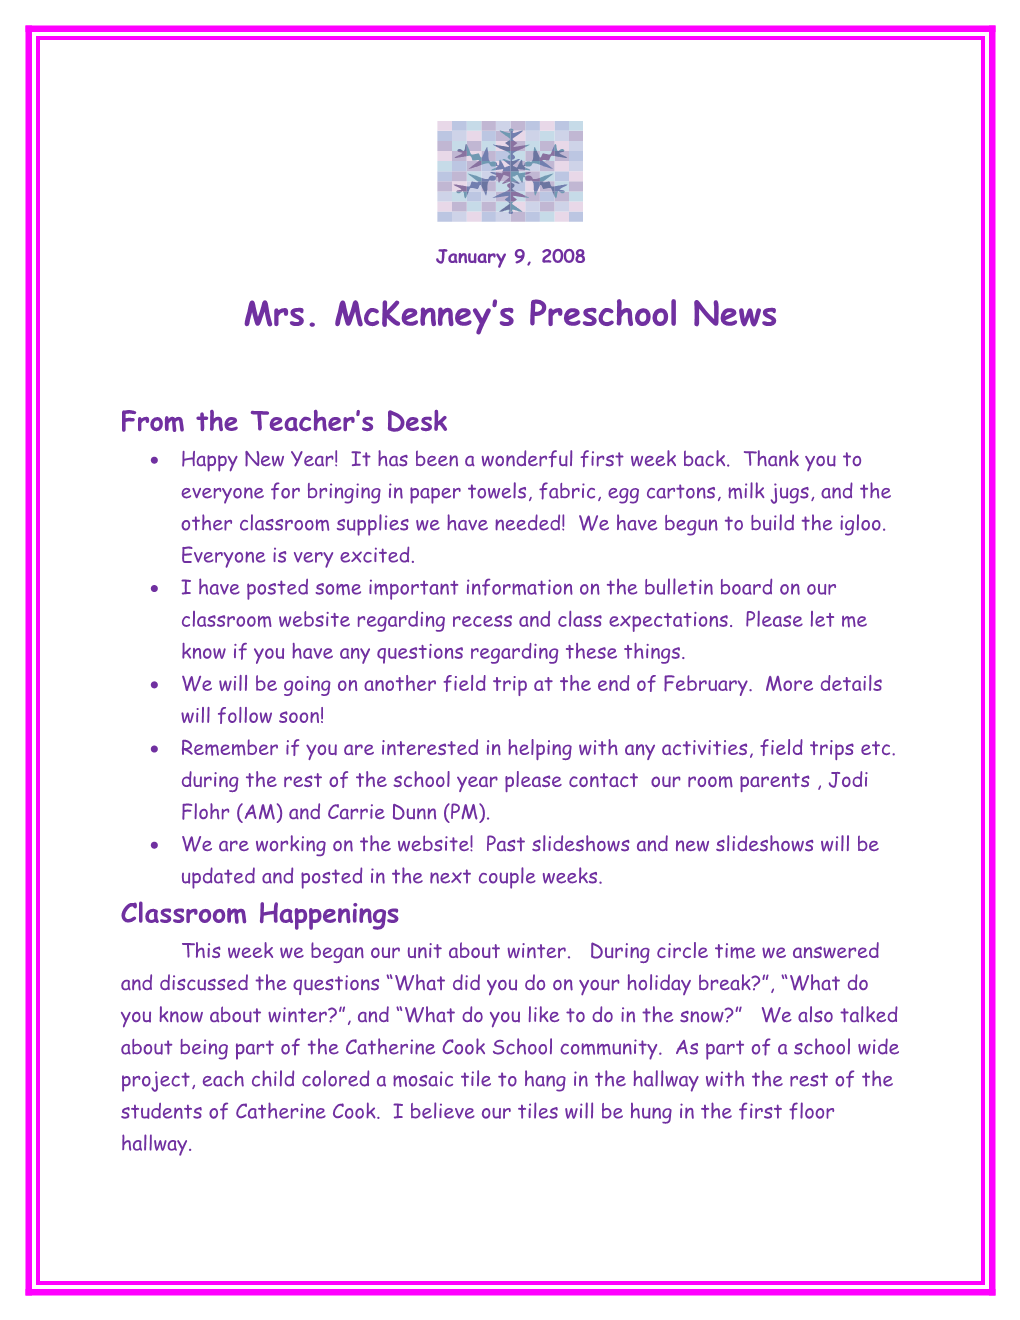 Mrs. Mckenney S Preschool News